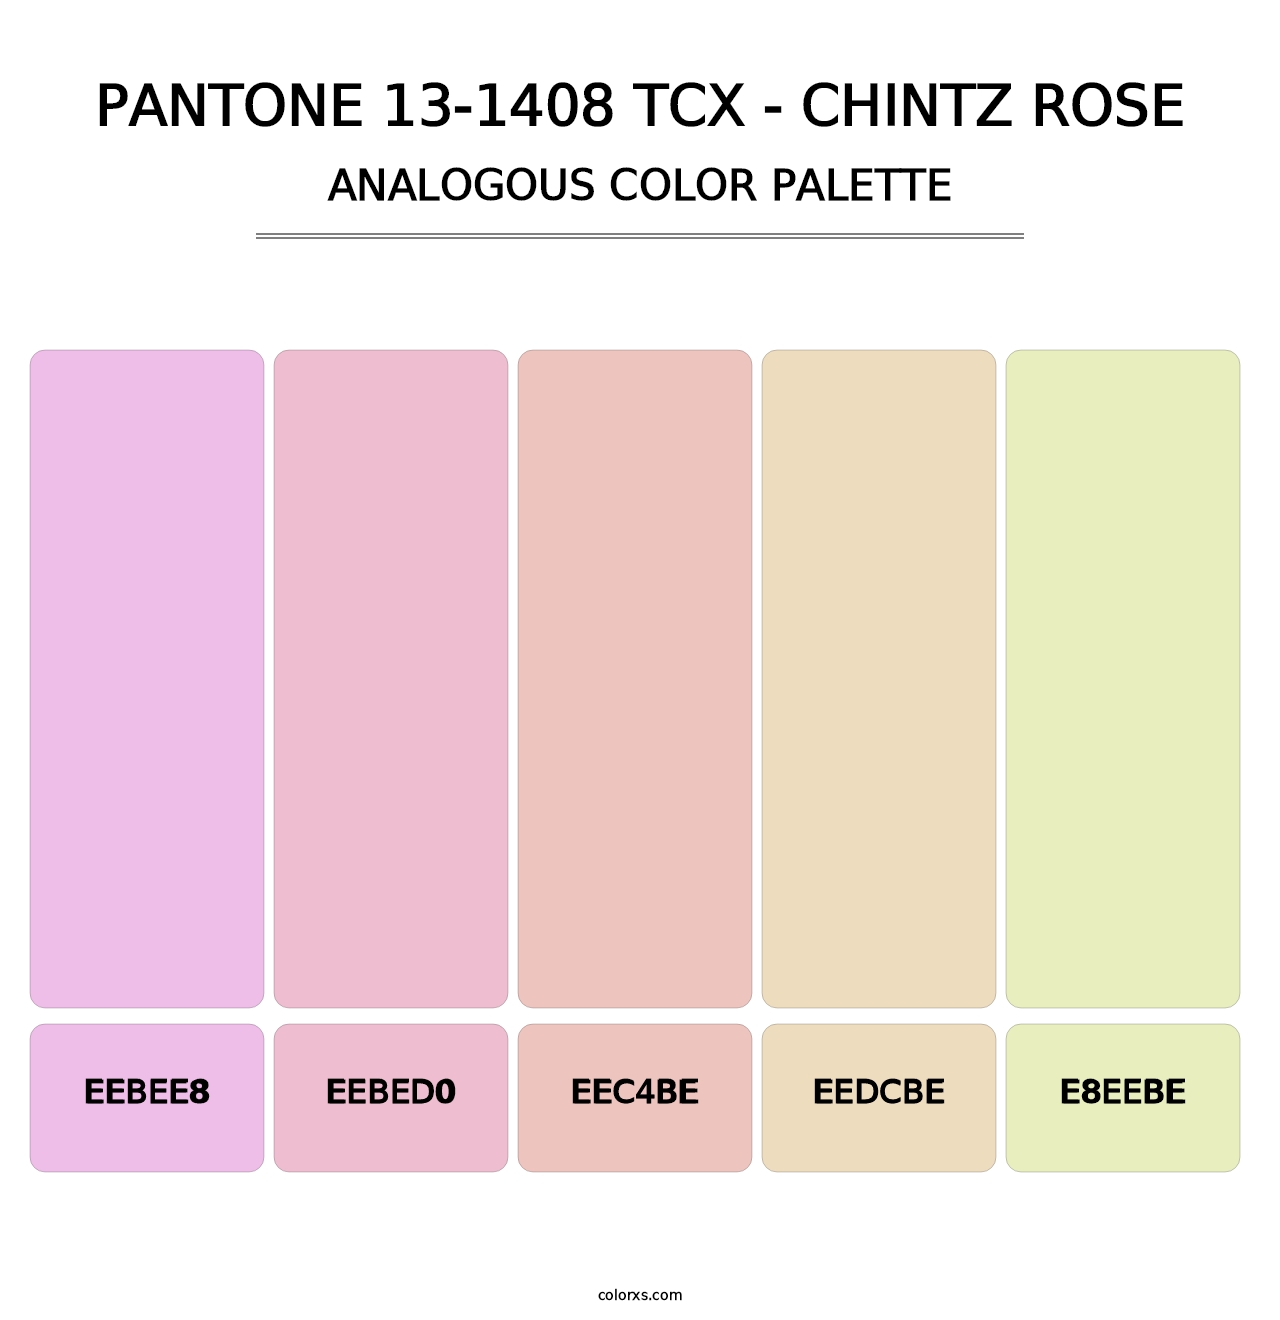 PANTONE 13-1408 TCX - Chintz Rose - Analogous Color Palette